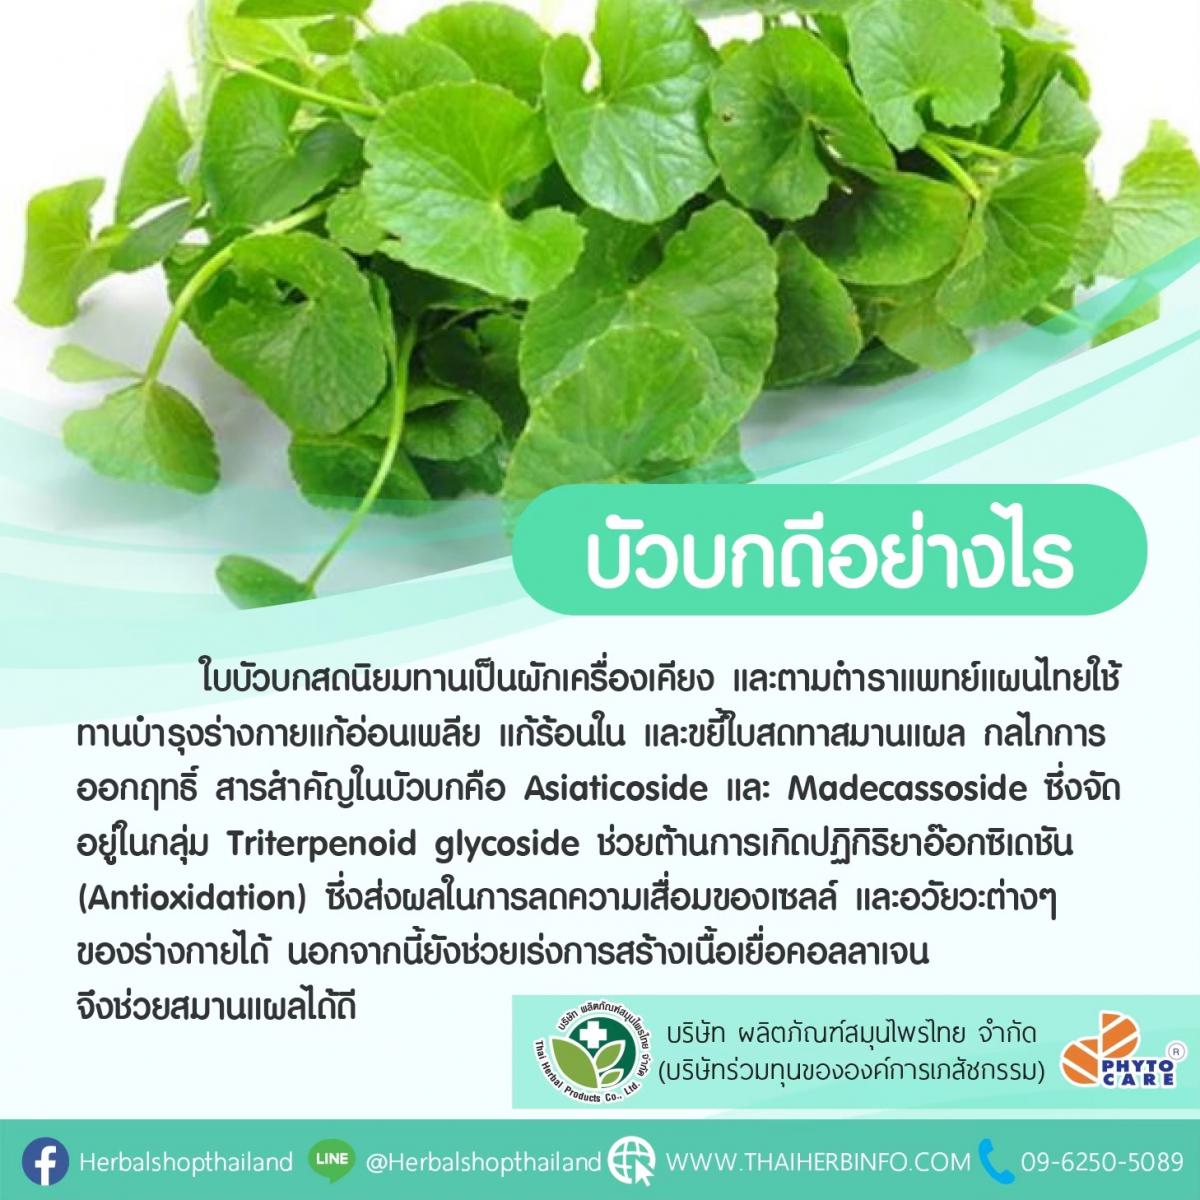 ลดบวมช้ำ หลังศัลยกรรม ด้วยบัวบก | Thai Herbal Products